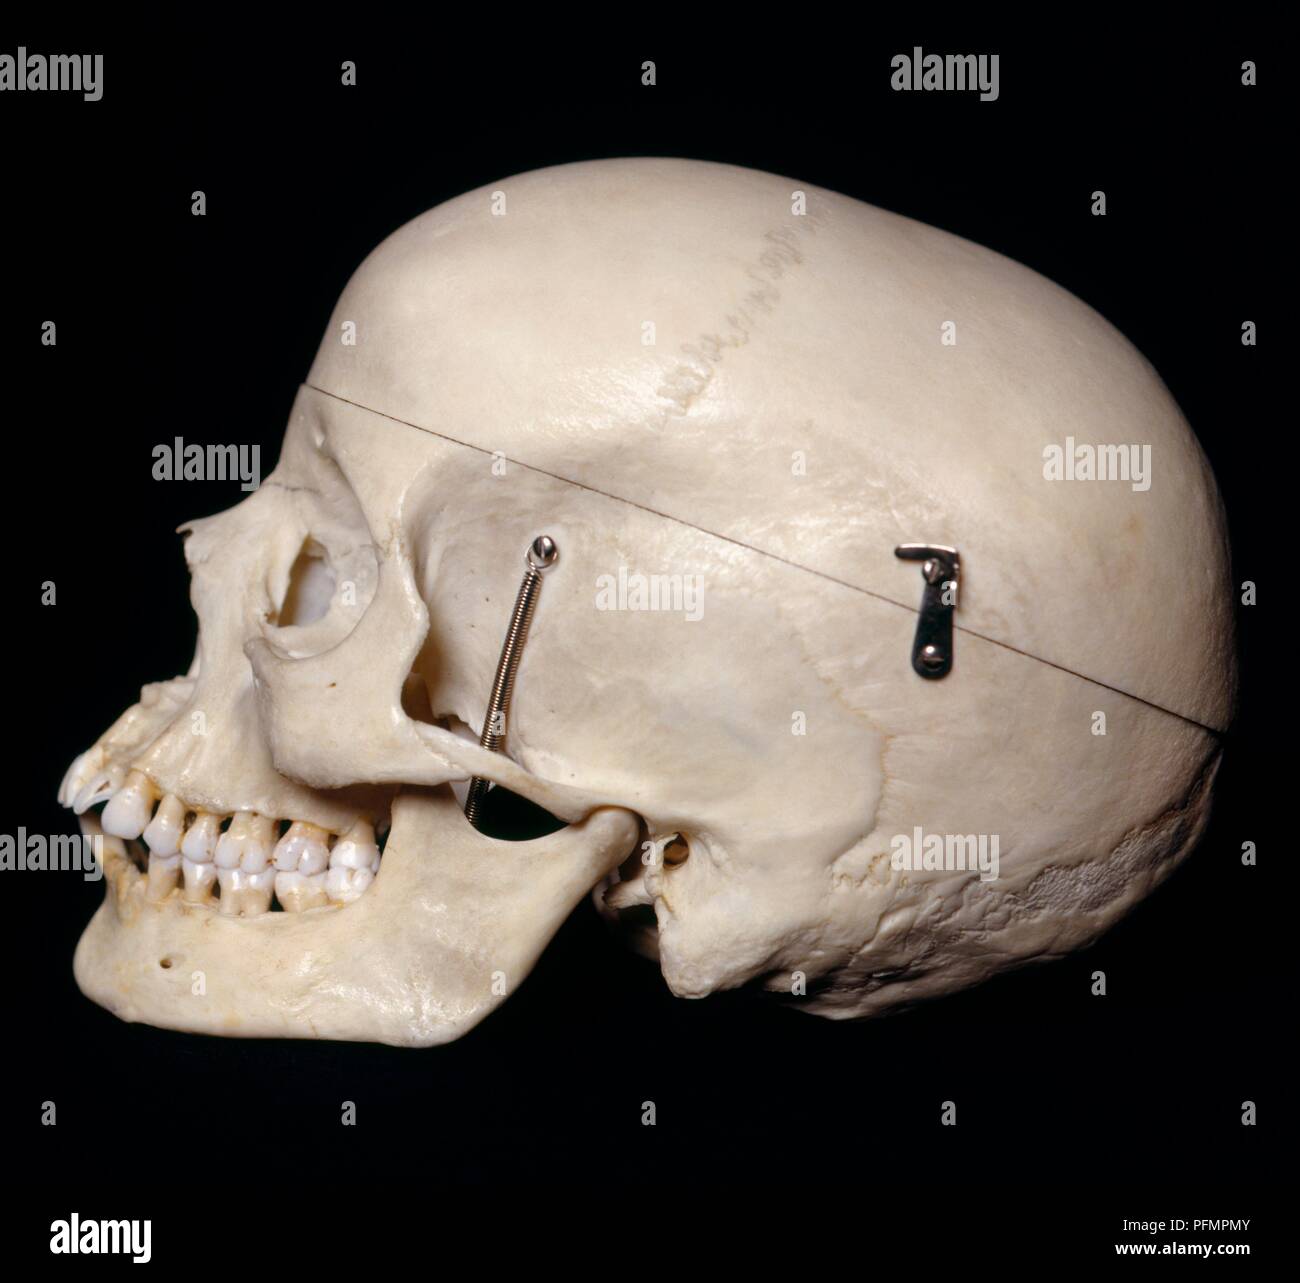 Female skull, side view Stock Photo